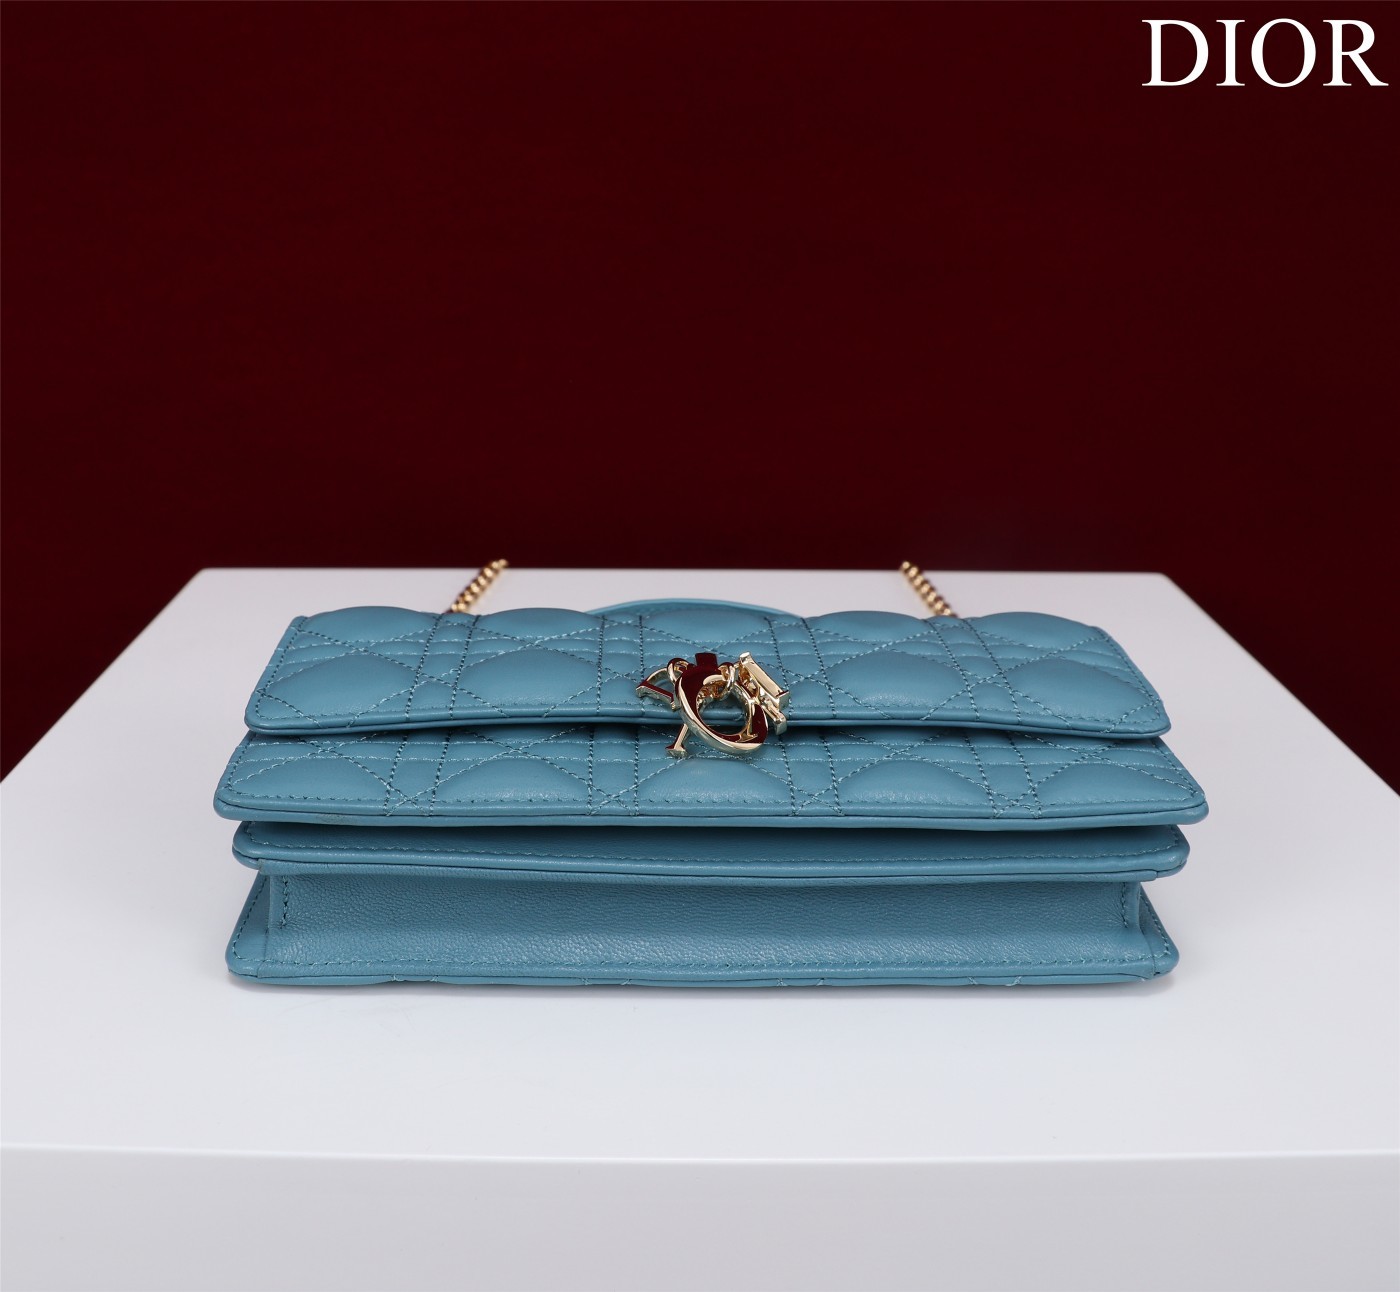 迪奥Dior顶级进口原厂羊皮链条包️️DIOR手袋于迪奥二零二三春夏成衣系列发布秀精彩亮相重新诠释迪奥别